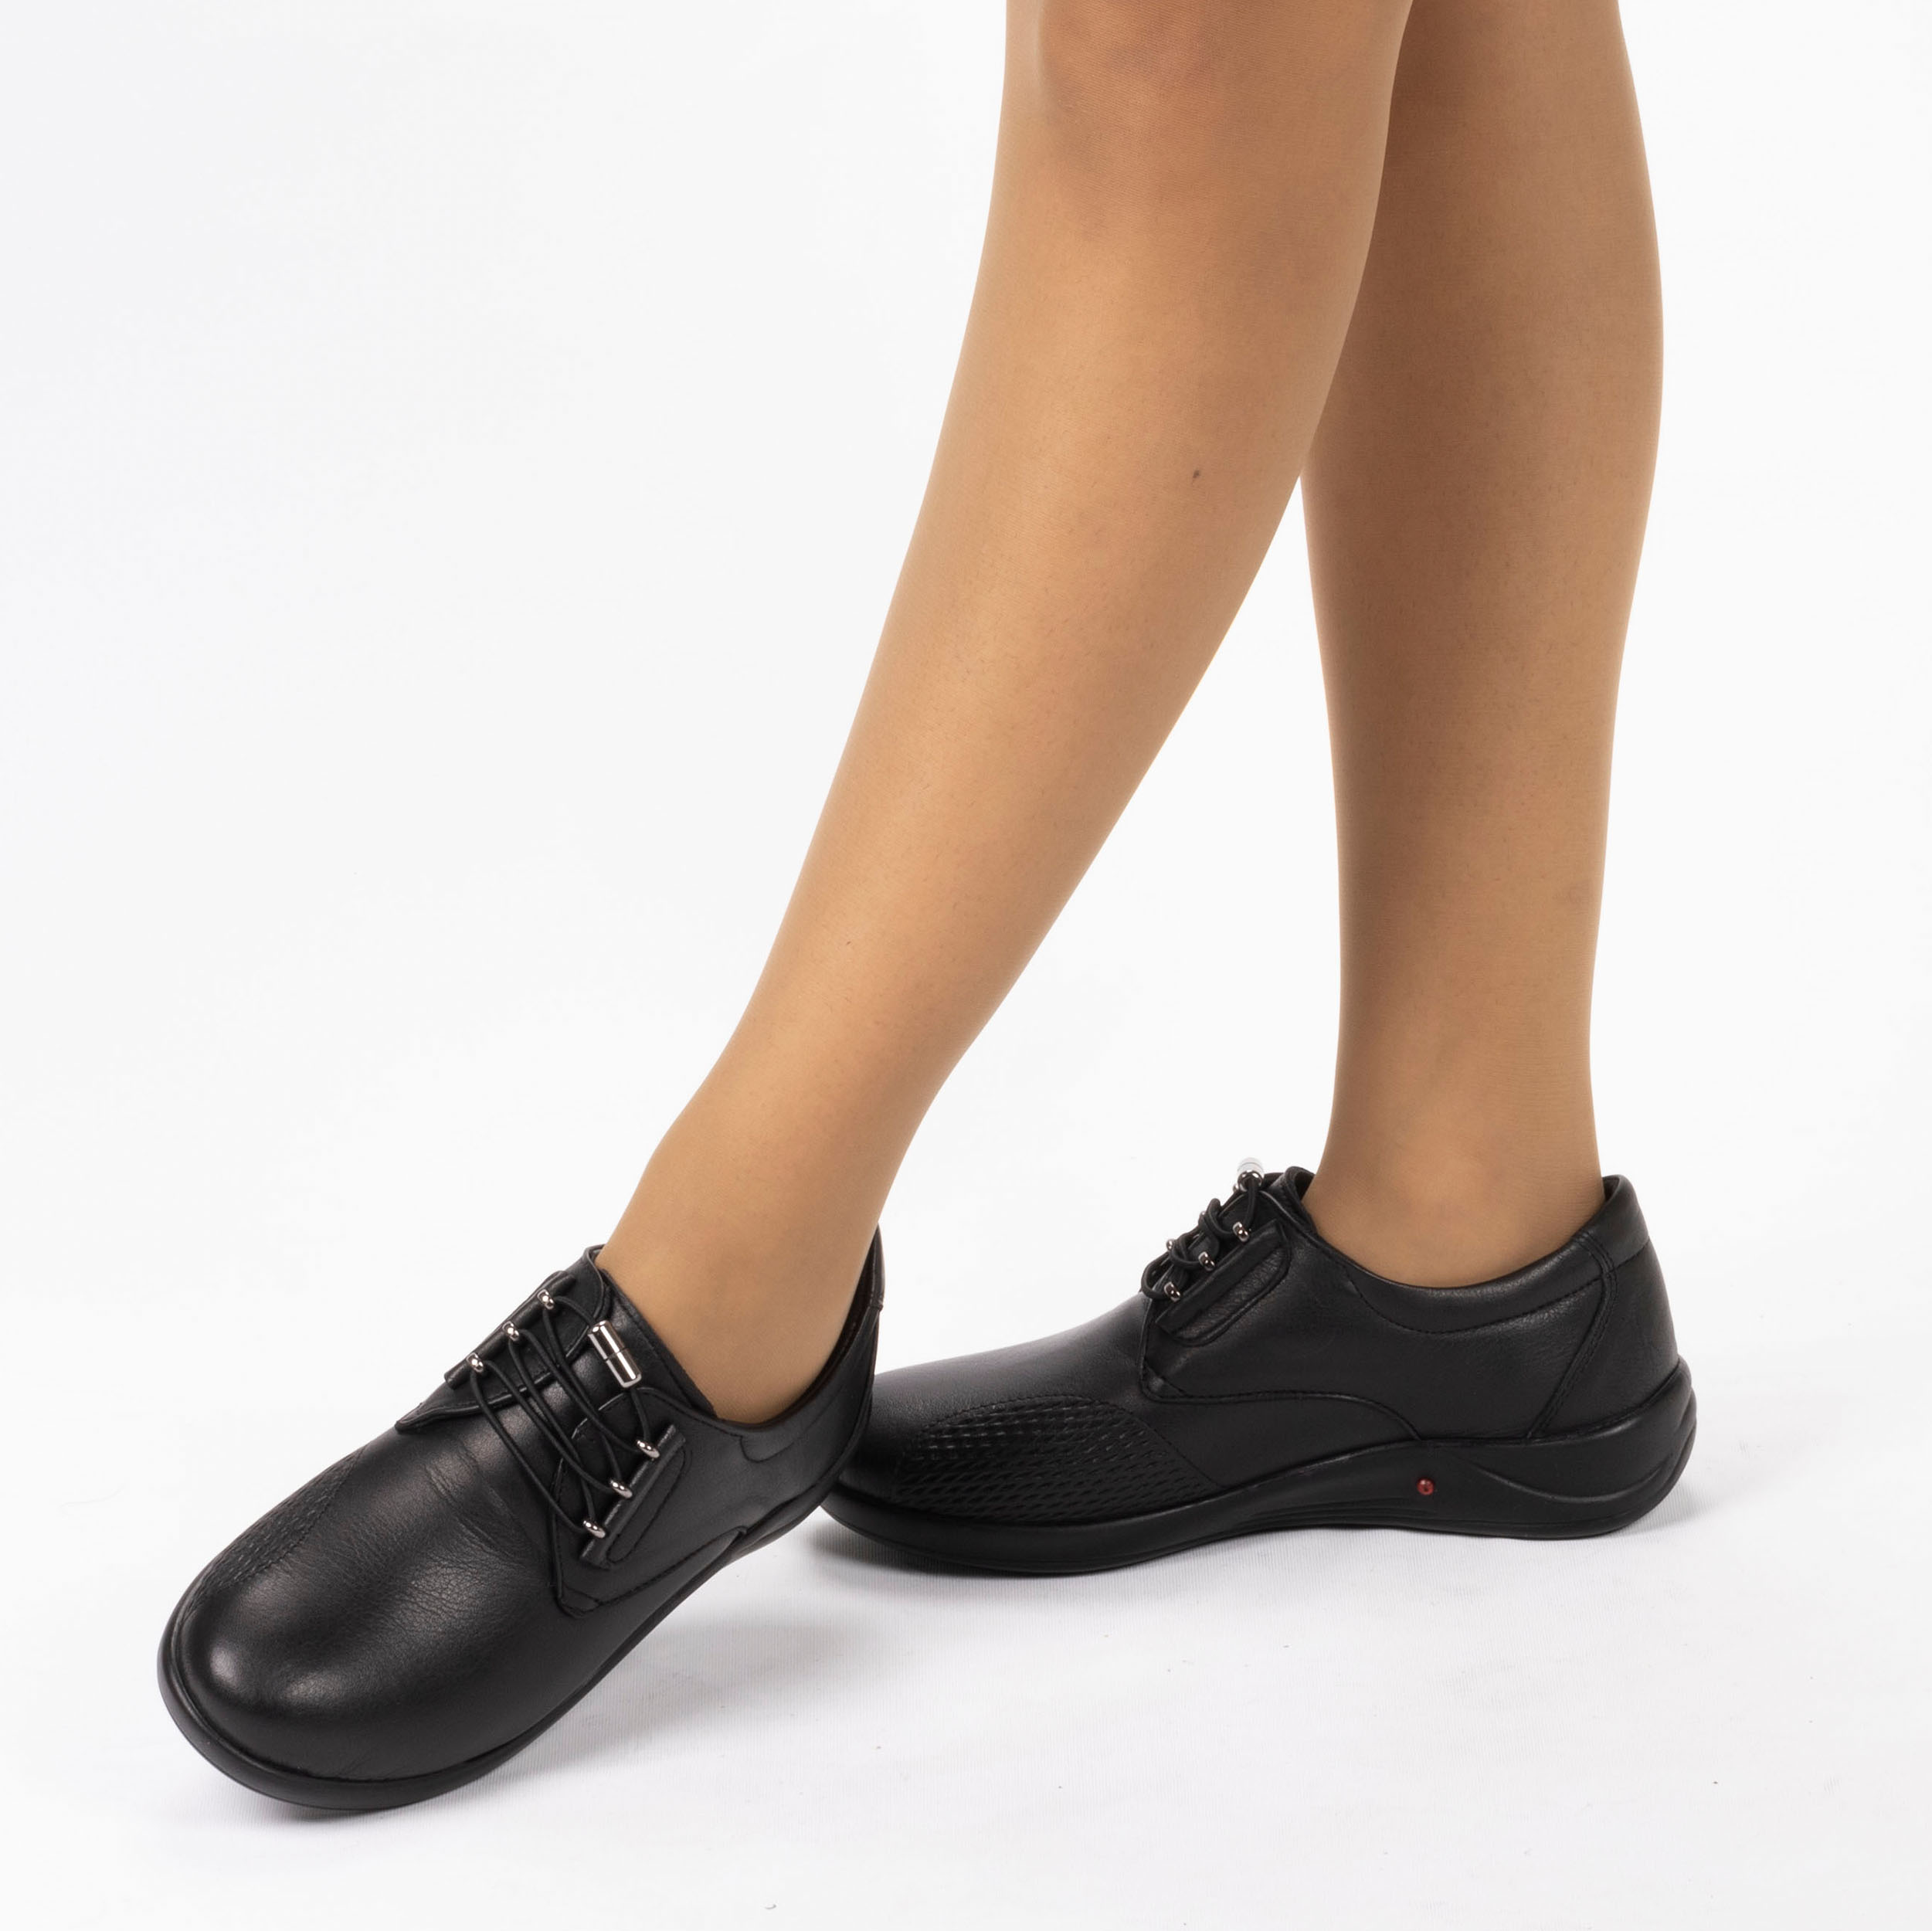 Kadın Deri Anatomik Topuk Dikeni Kemik Çıkıntısı Komfort Ayakkabı, Renk: Siyah, Beden: 36